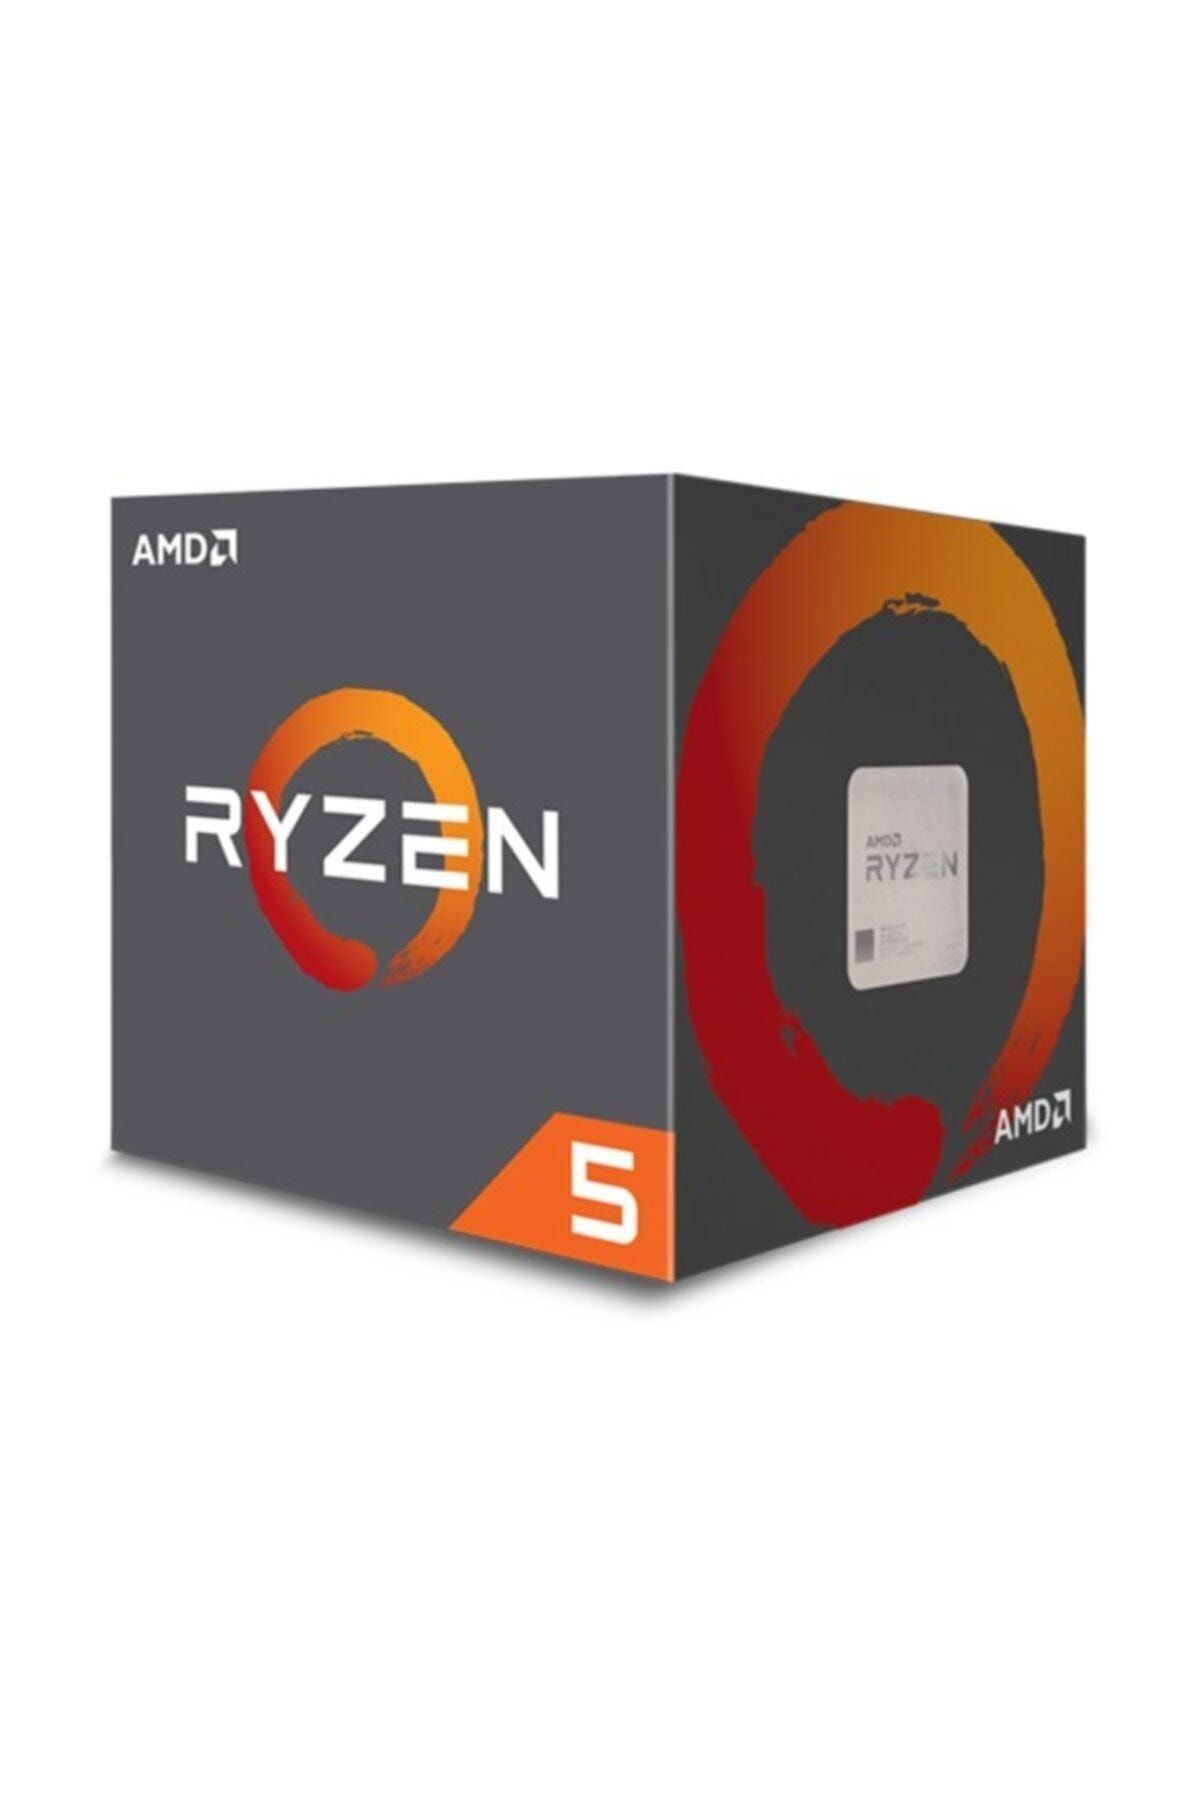 AMD Ryzen 5 1600PC/タブレット